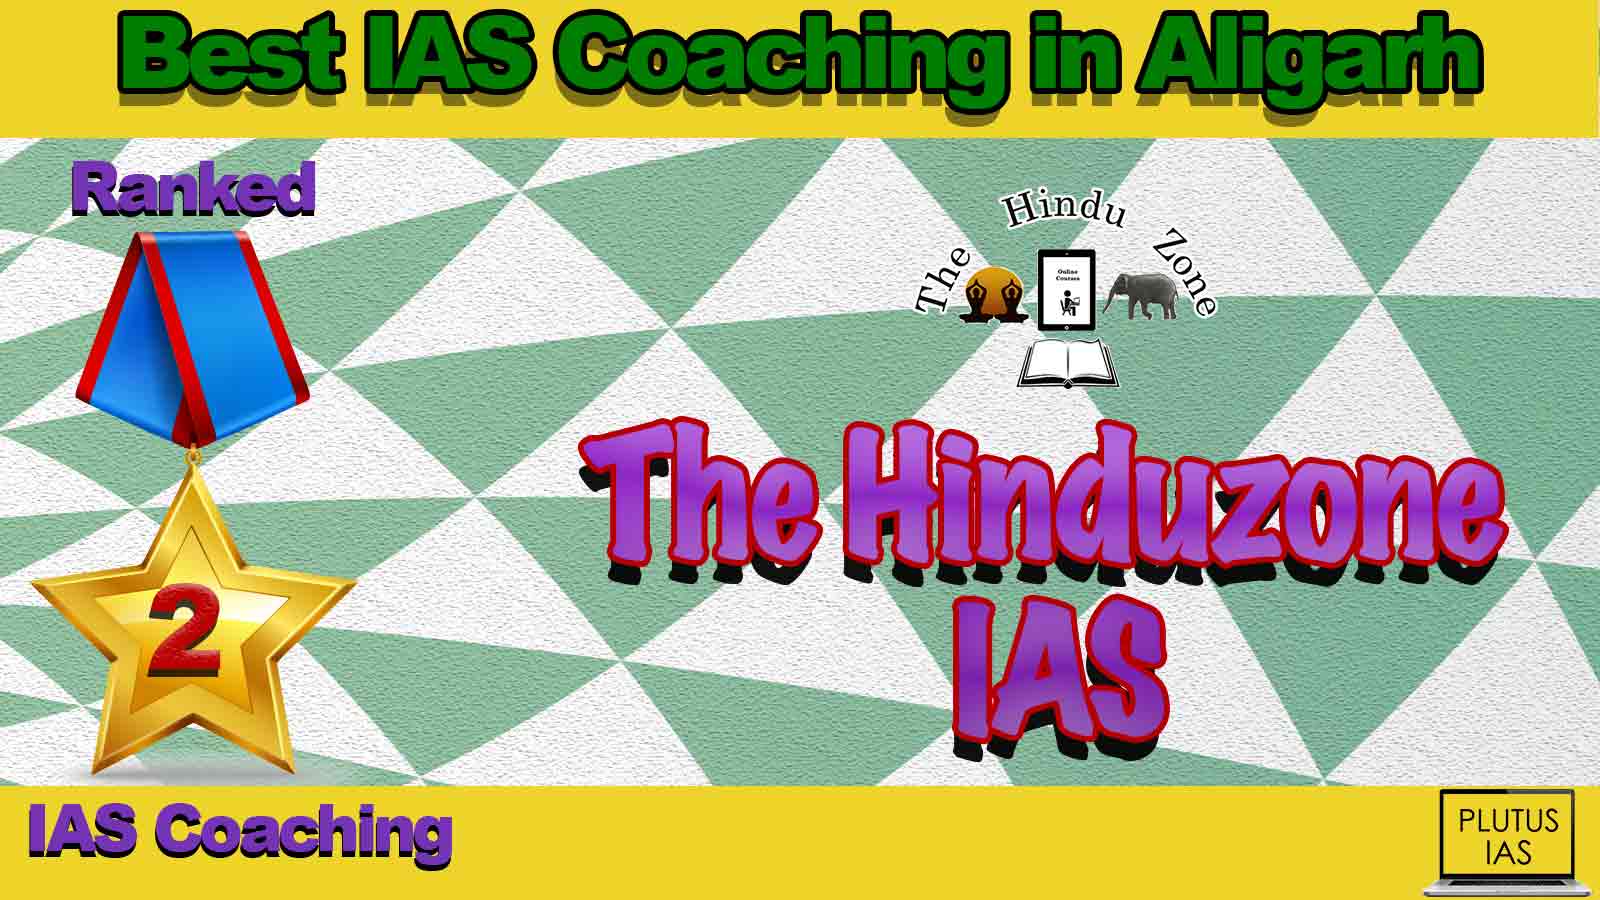 Best IAS Coaching in Aligarh